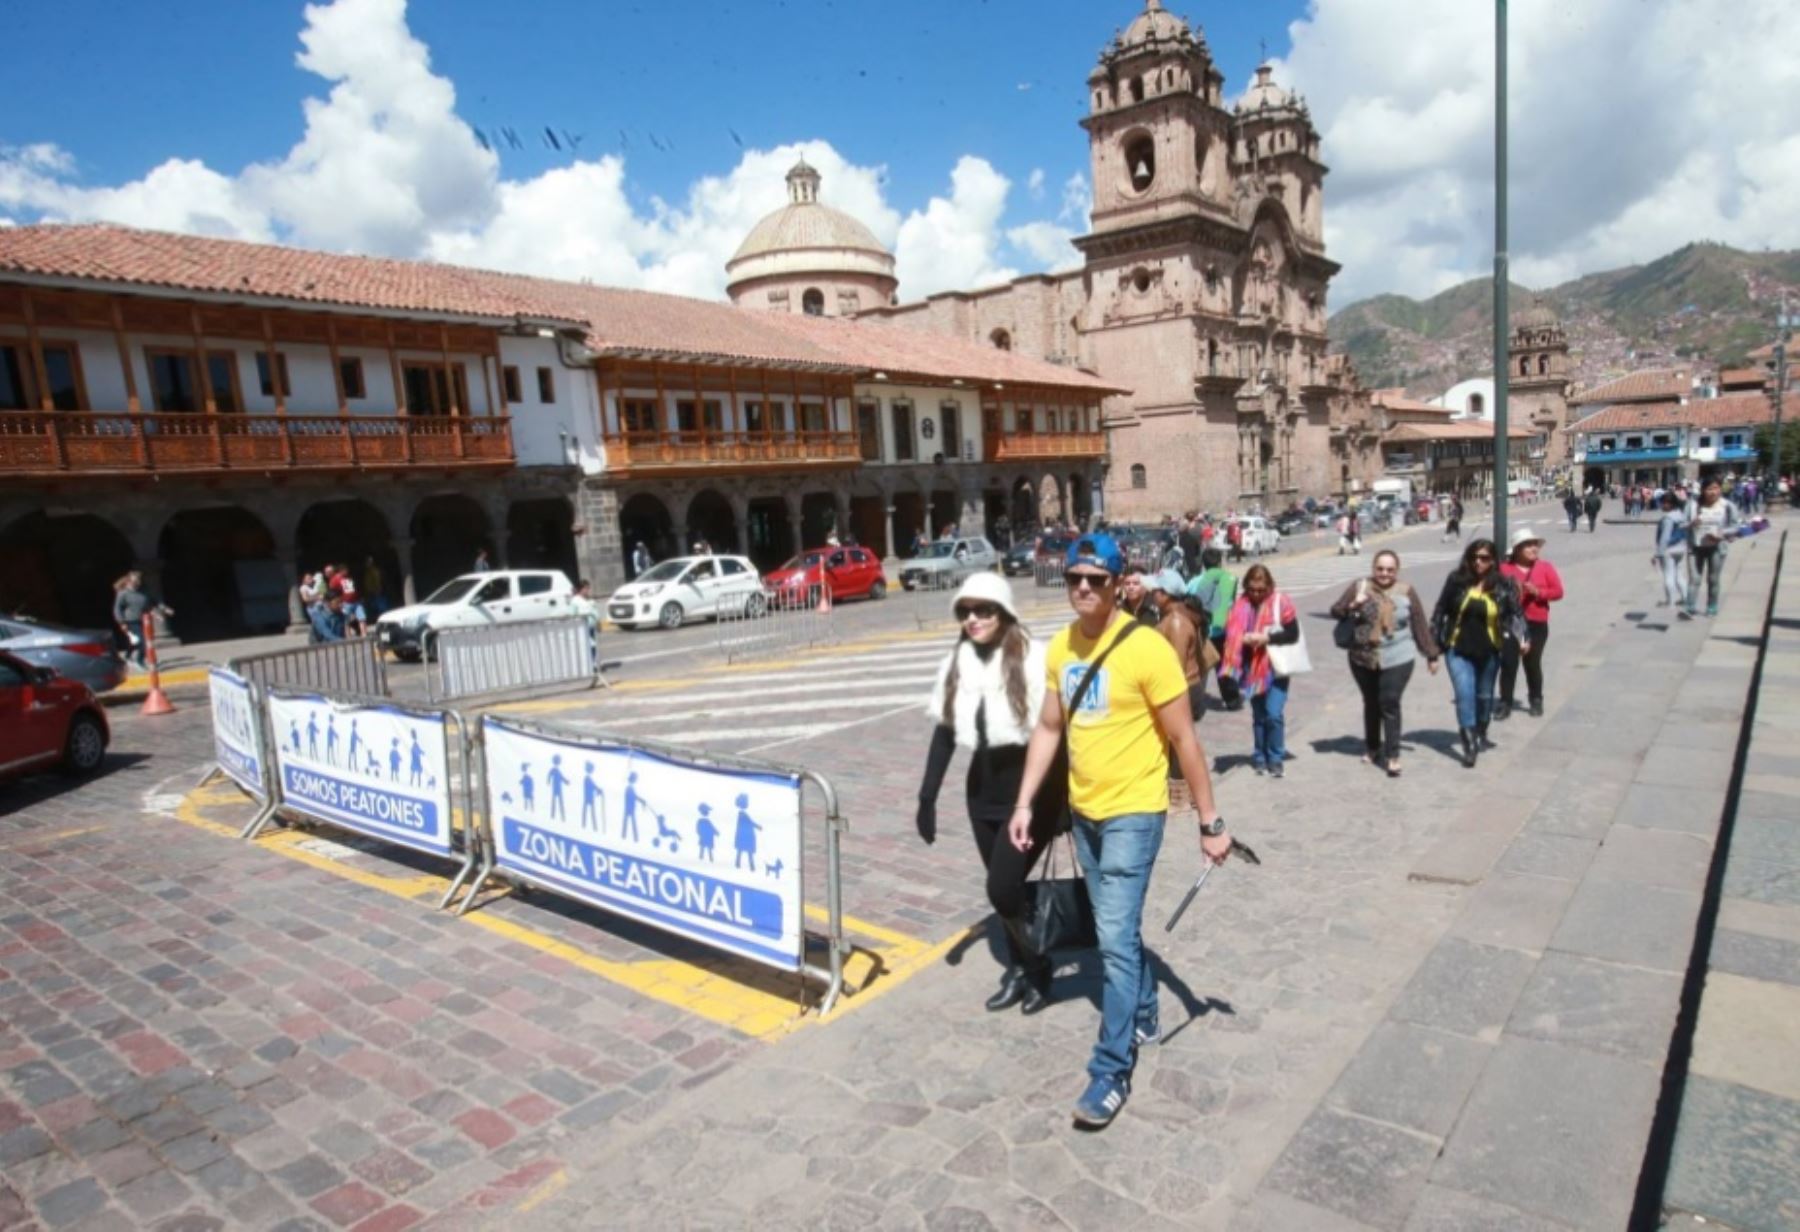 El alcalde provincial del Cusco, Carlos Moscoso, informó que se ampliarán a 10 el número de calles restringidas para el tránsito de vehículos en las zonas aledañas a la Plaza de Armas.